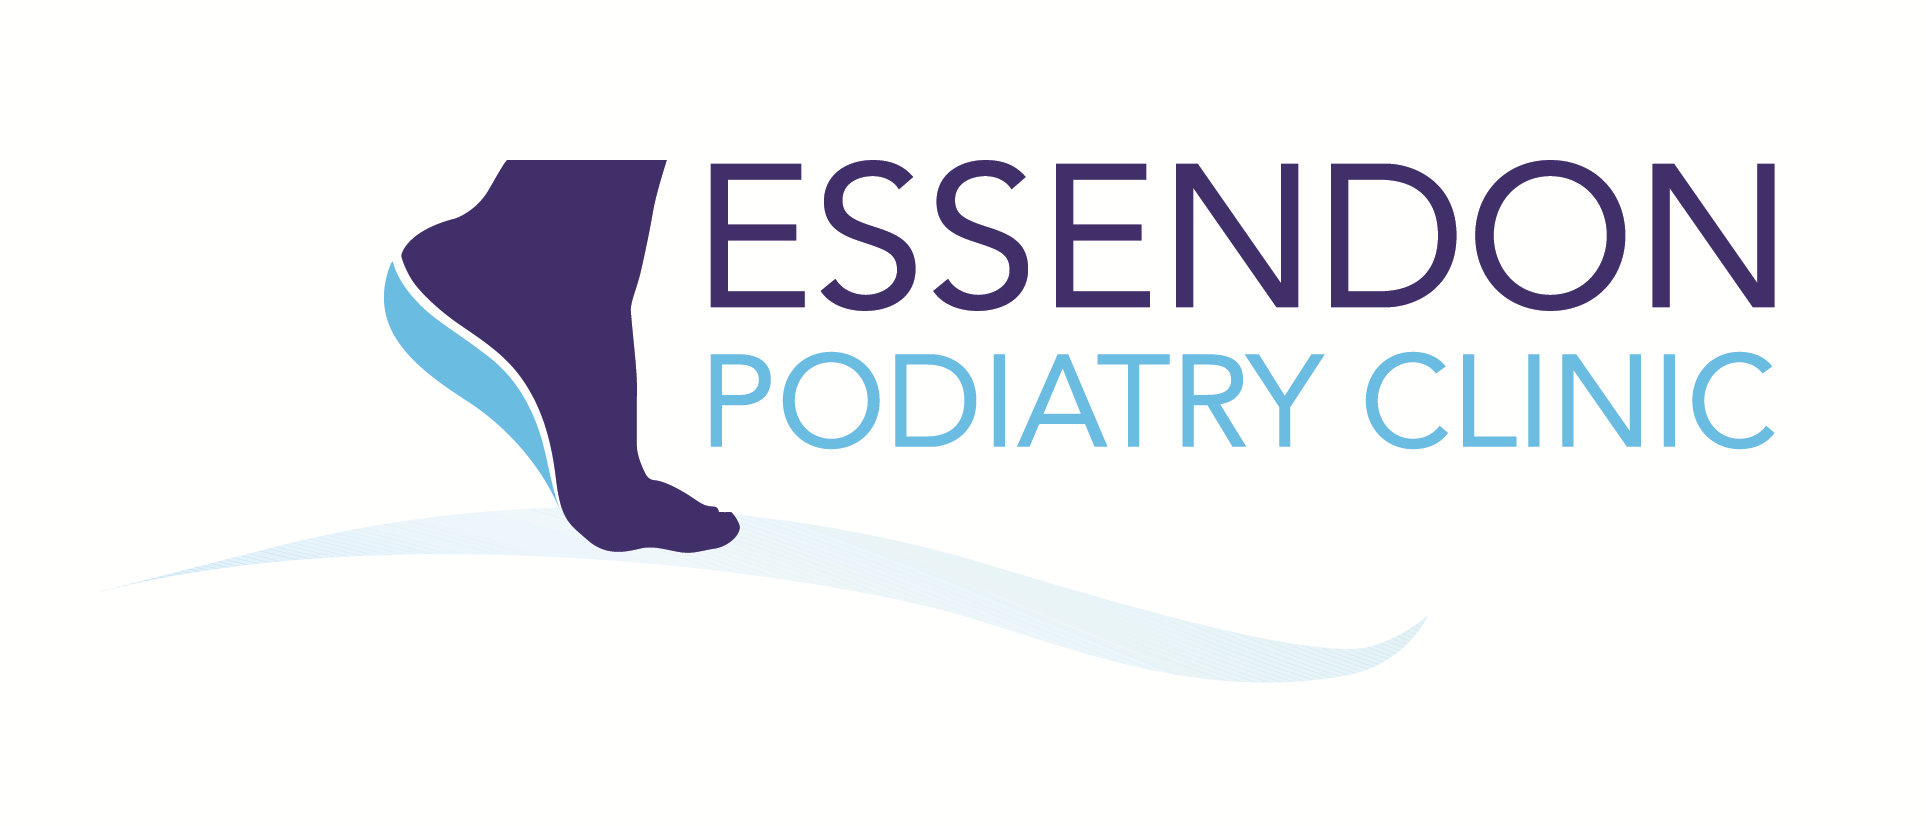 Essendon Podiatry Clinic